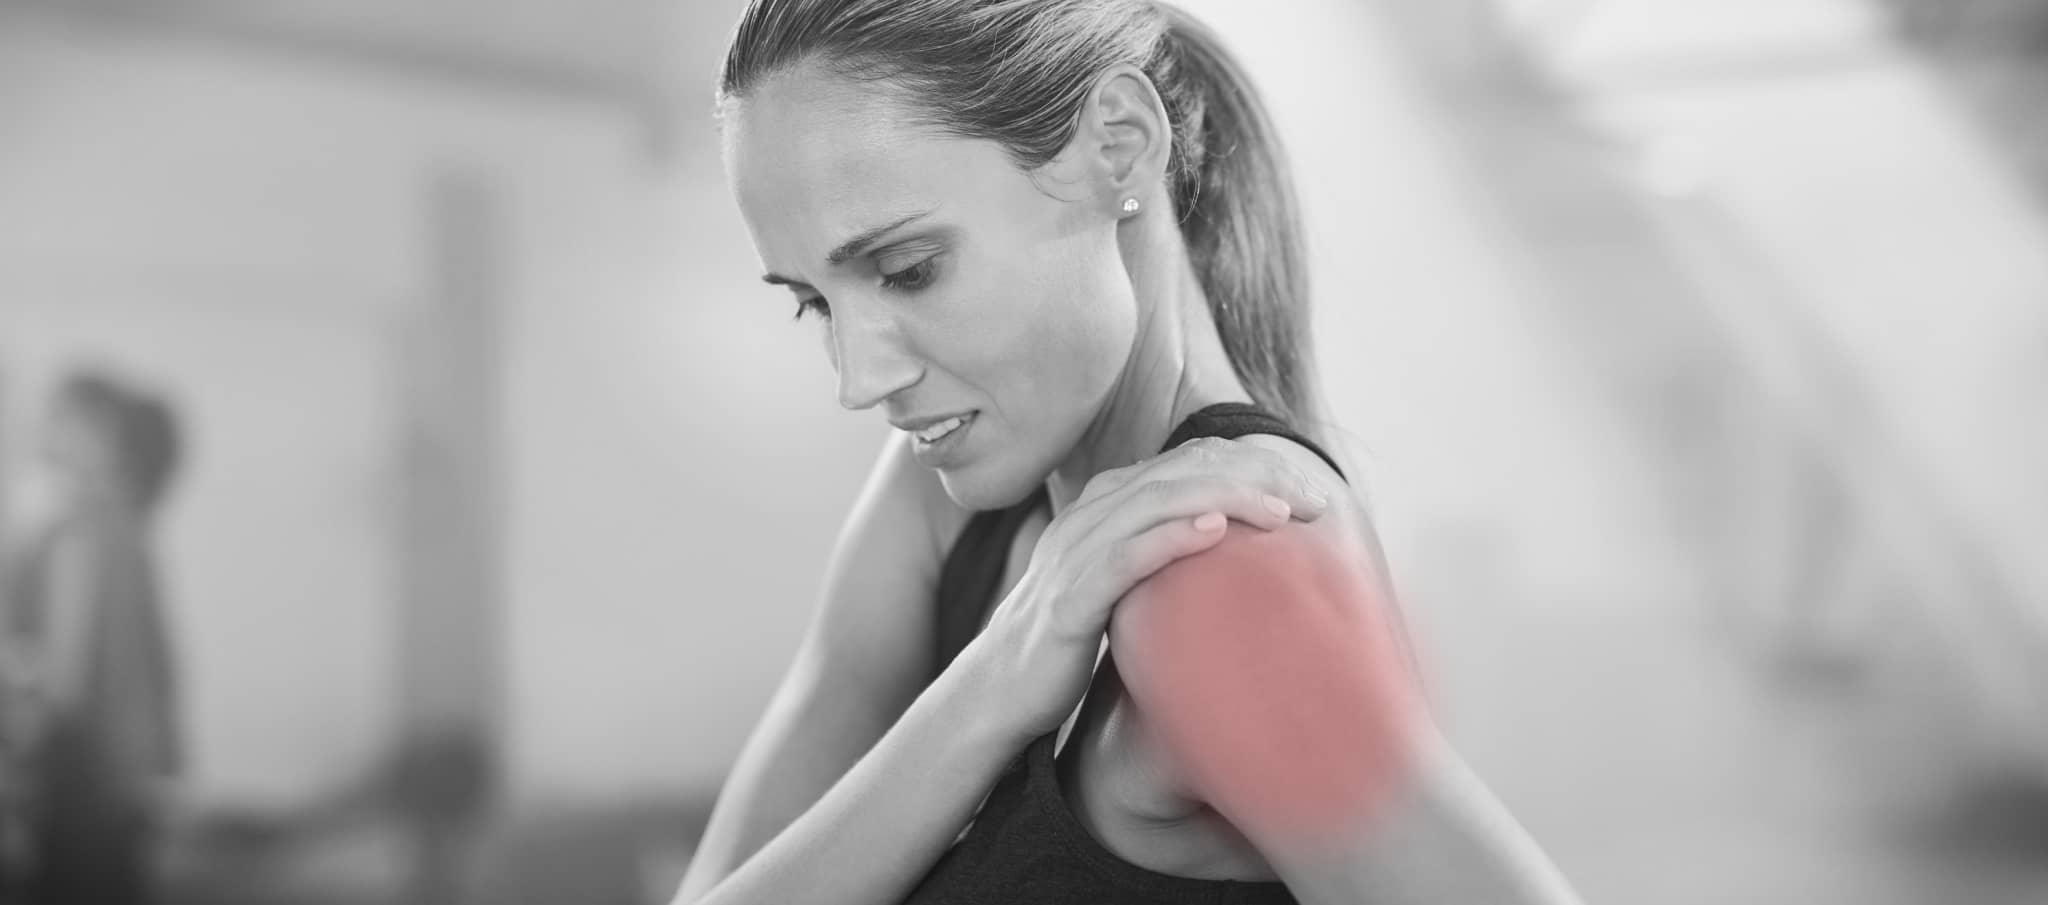 Comment savoir si j’ai de l’arthrose à l’épaule ? | Dr Paillard | Paris